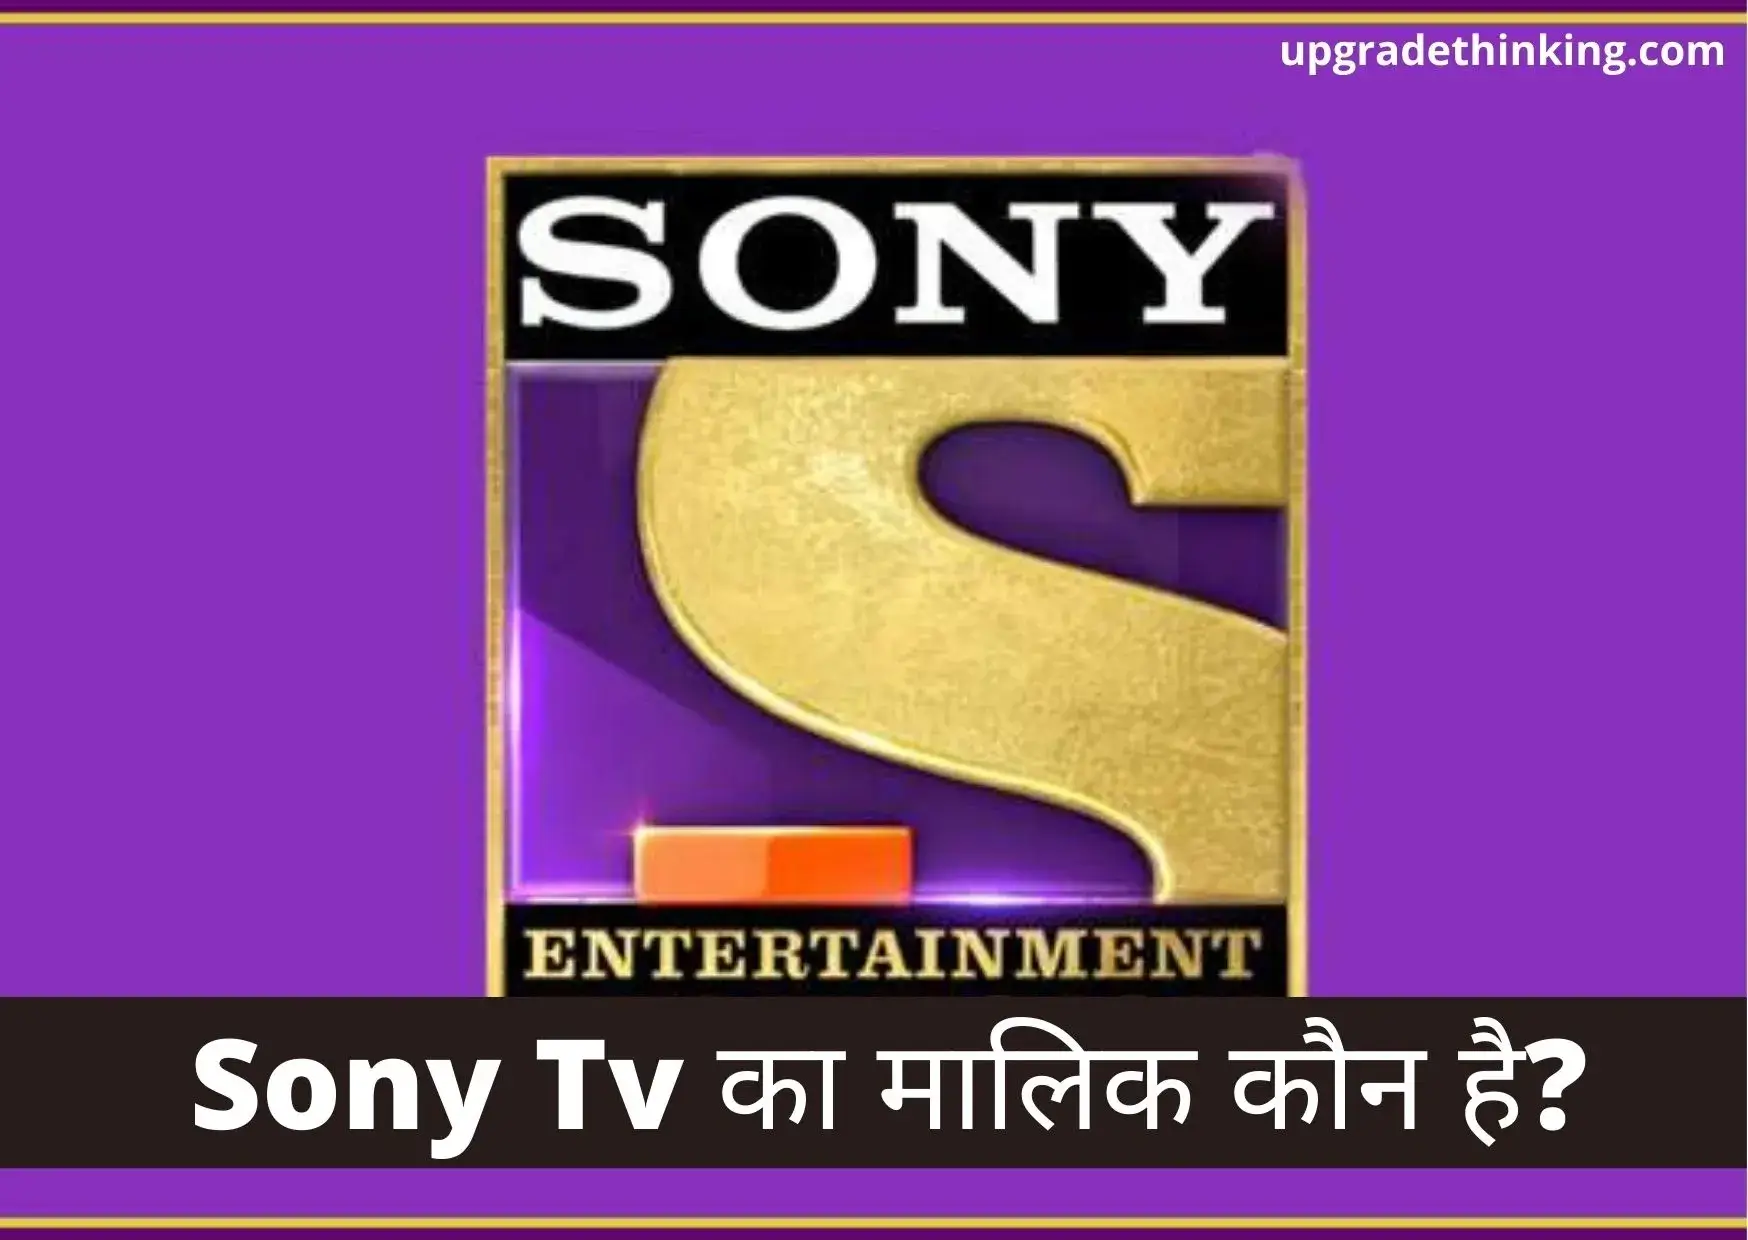 Sony Tv Ka Malik Kaun Hai